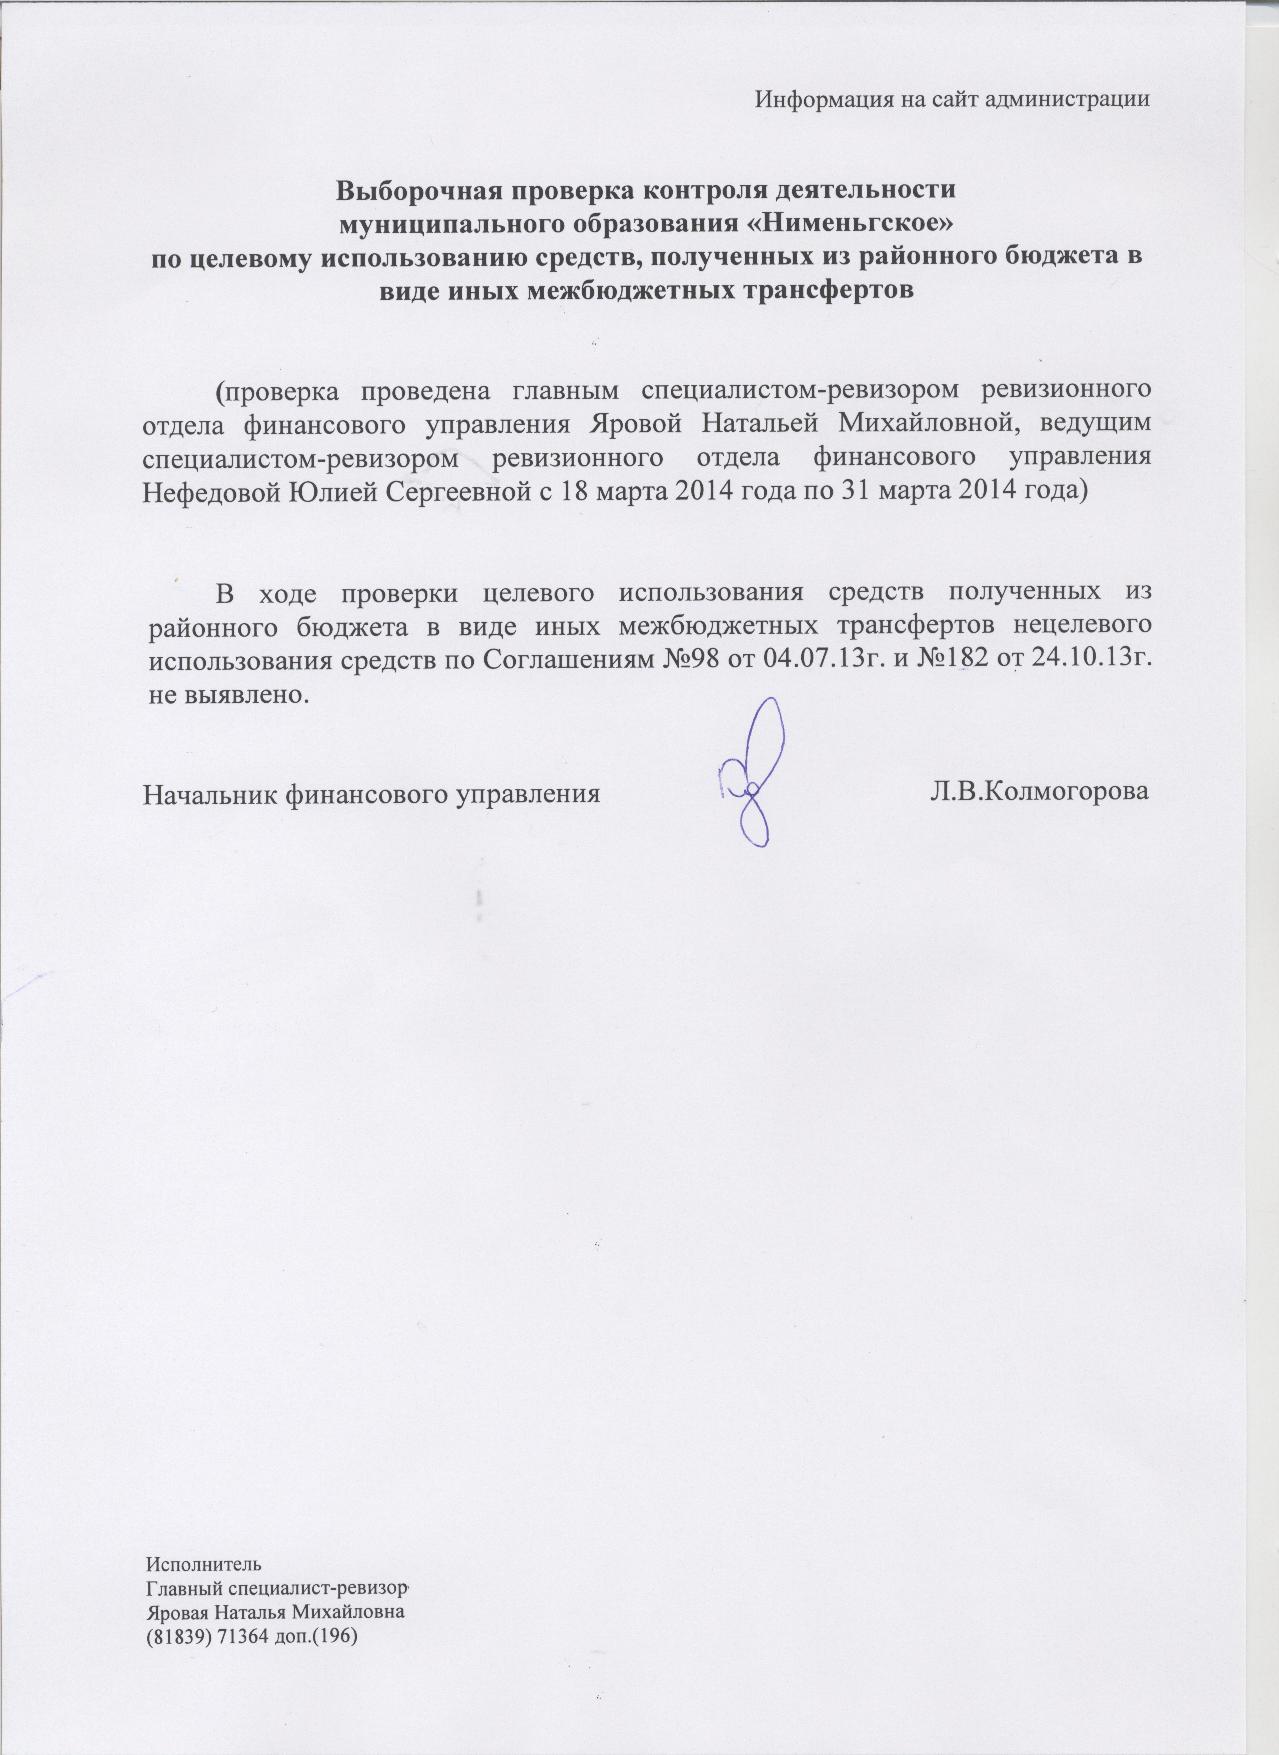 Выборочная проверка контроля деятельности муниципального образования "Нименьгское" по целевому использованию средств, полученных из районного бюджета в виде иных межбюджетных трансфертов